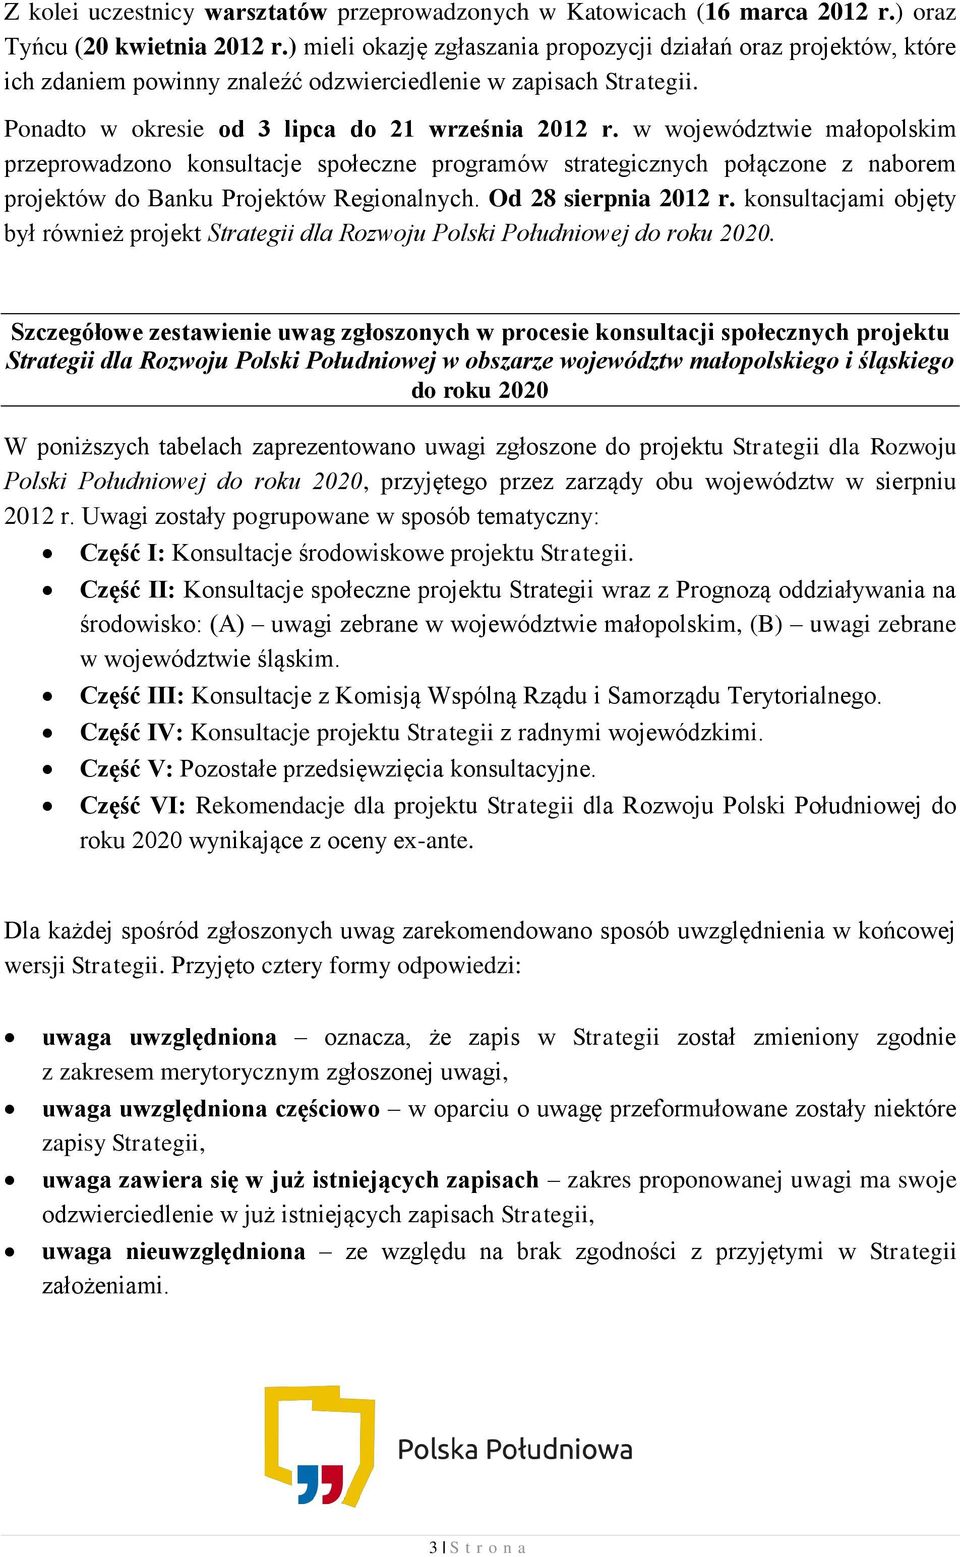 w województwie małopolskim przeprowadzono konsultacje społeczne programów strategicznych połączone z naborem projektów do Banku Projektów Regionalnych. Od 28 sierpnia 2012 r.